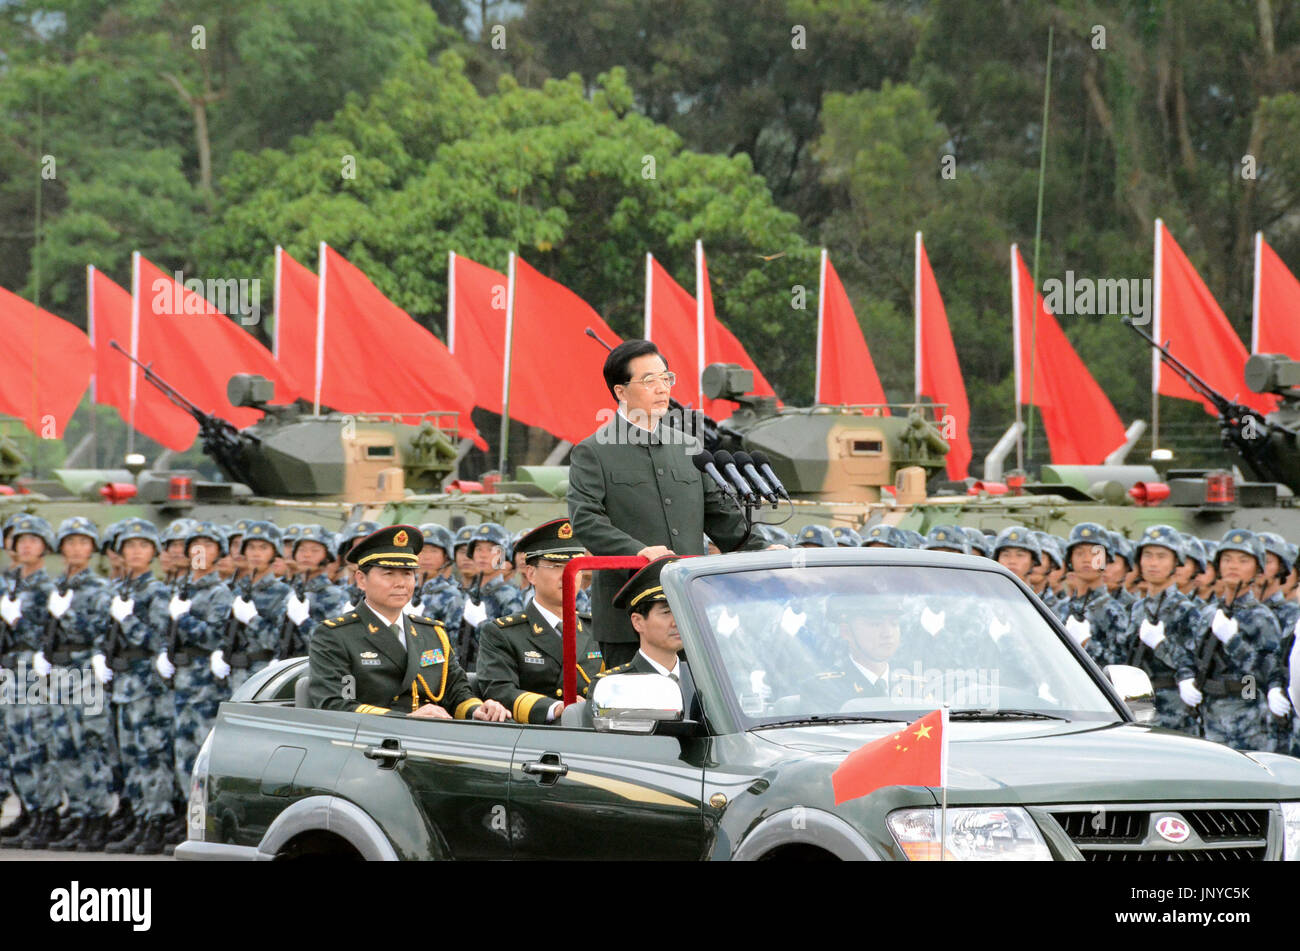 HONG KONG, CHINE - le président chinois Hu Jintao se trouve dans un véhicule à toit ouvert comme il se déplace vers le bas une ligne de l'Armée populaire de libération stationnées à Hong Kong le 29 juin 2012. Hu a commencé une visite de trois jours à Hong Kong pour célébrer le 15e anniversaire de son retour à la Chine et à la présidence de l'assermentation de la nouvelle administration du territoire. (Kyodo) Banque D'Images